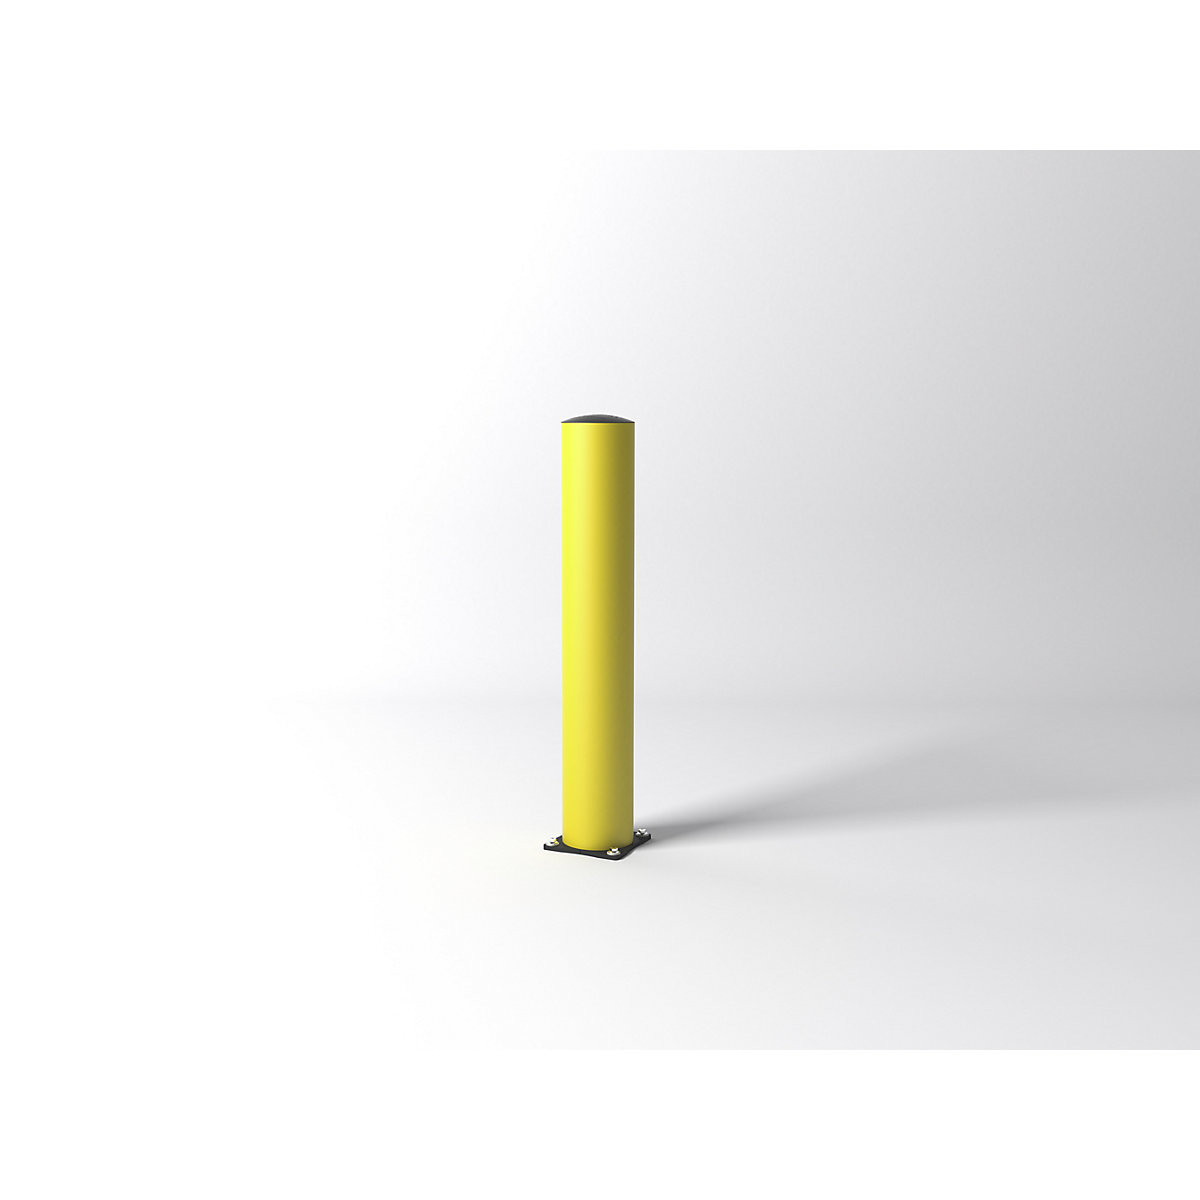 Poste de proteção contra impactos FLEX IMPACT, Ø 200 mm, altura 1200 mm, placa de solo galvanizada, amarela